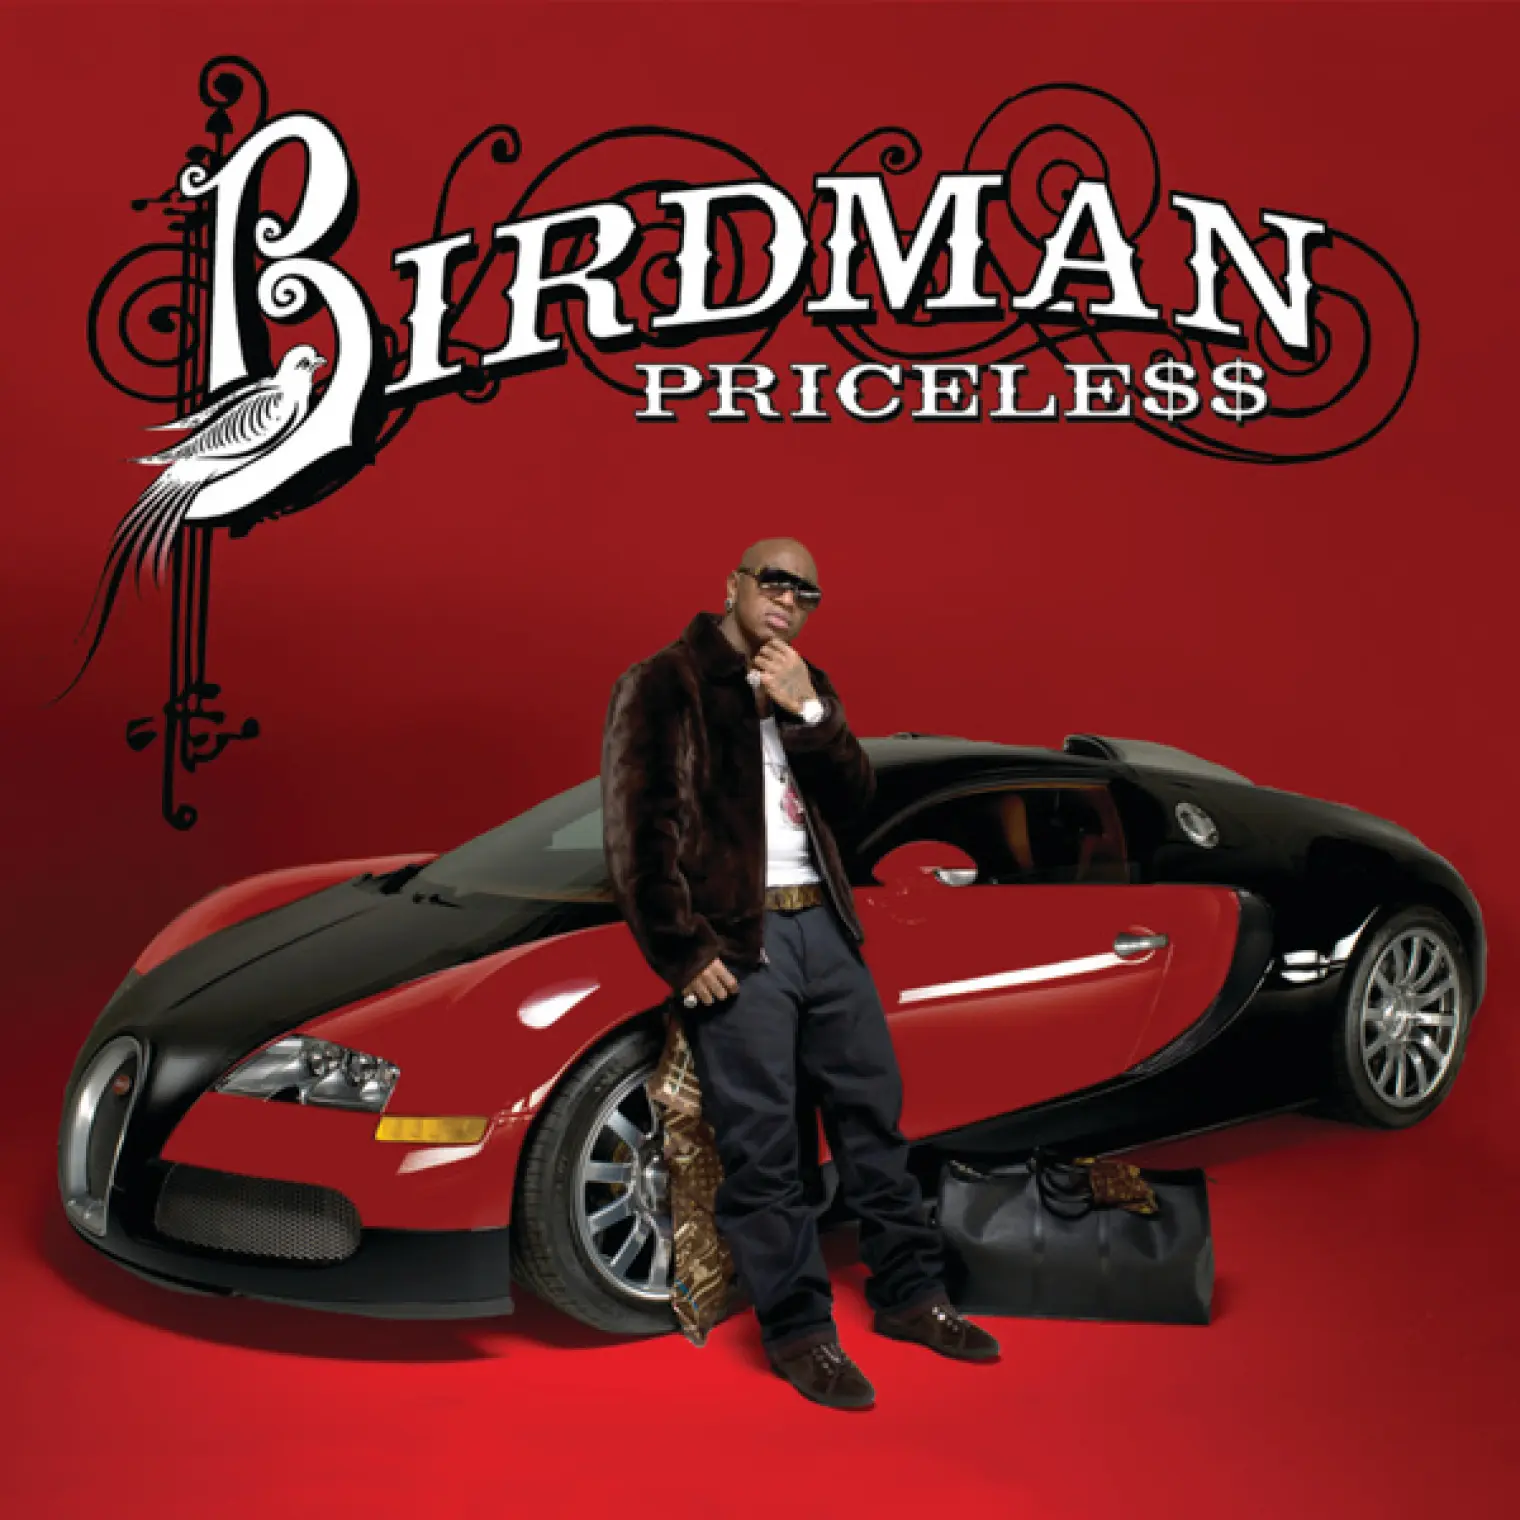 Pricele$$ -  Birdman 